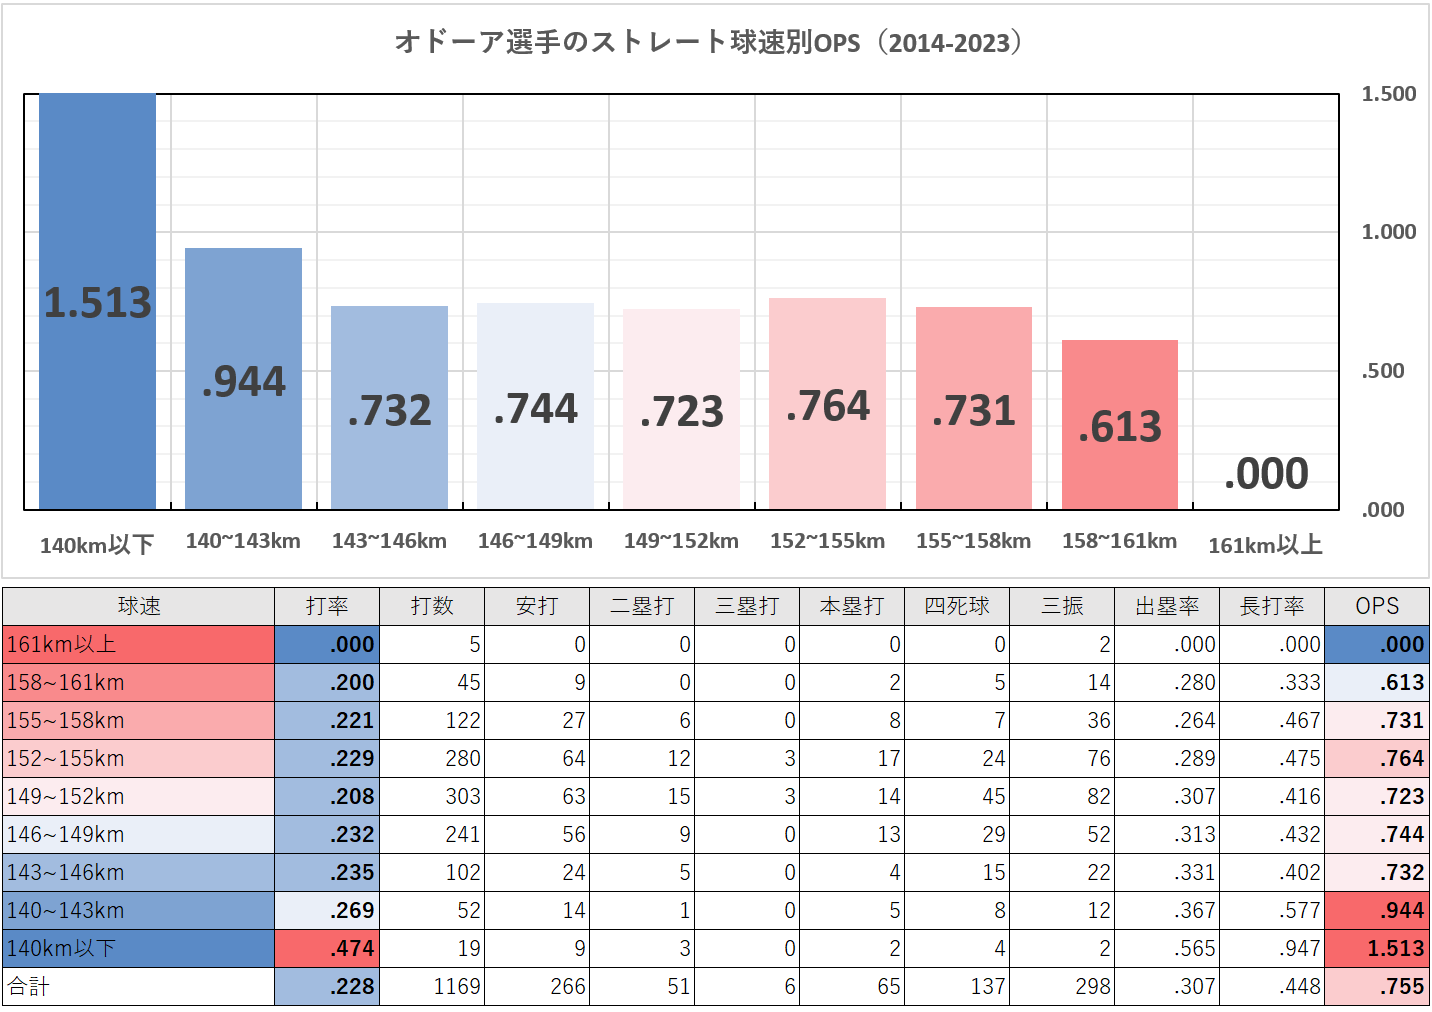 ルーグネッド・オドーア選手のストレート球速別成績（MLB2014-2023年）